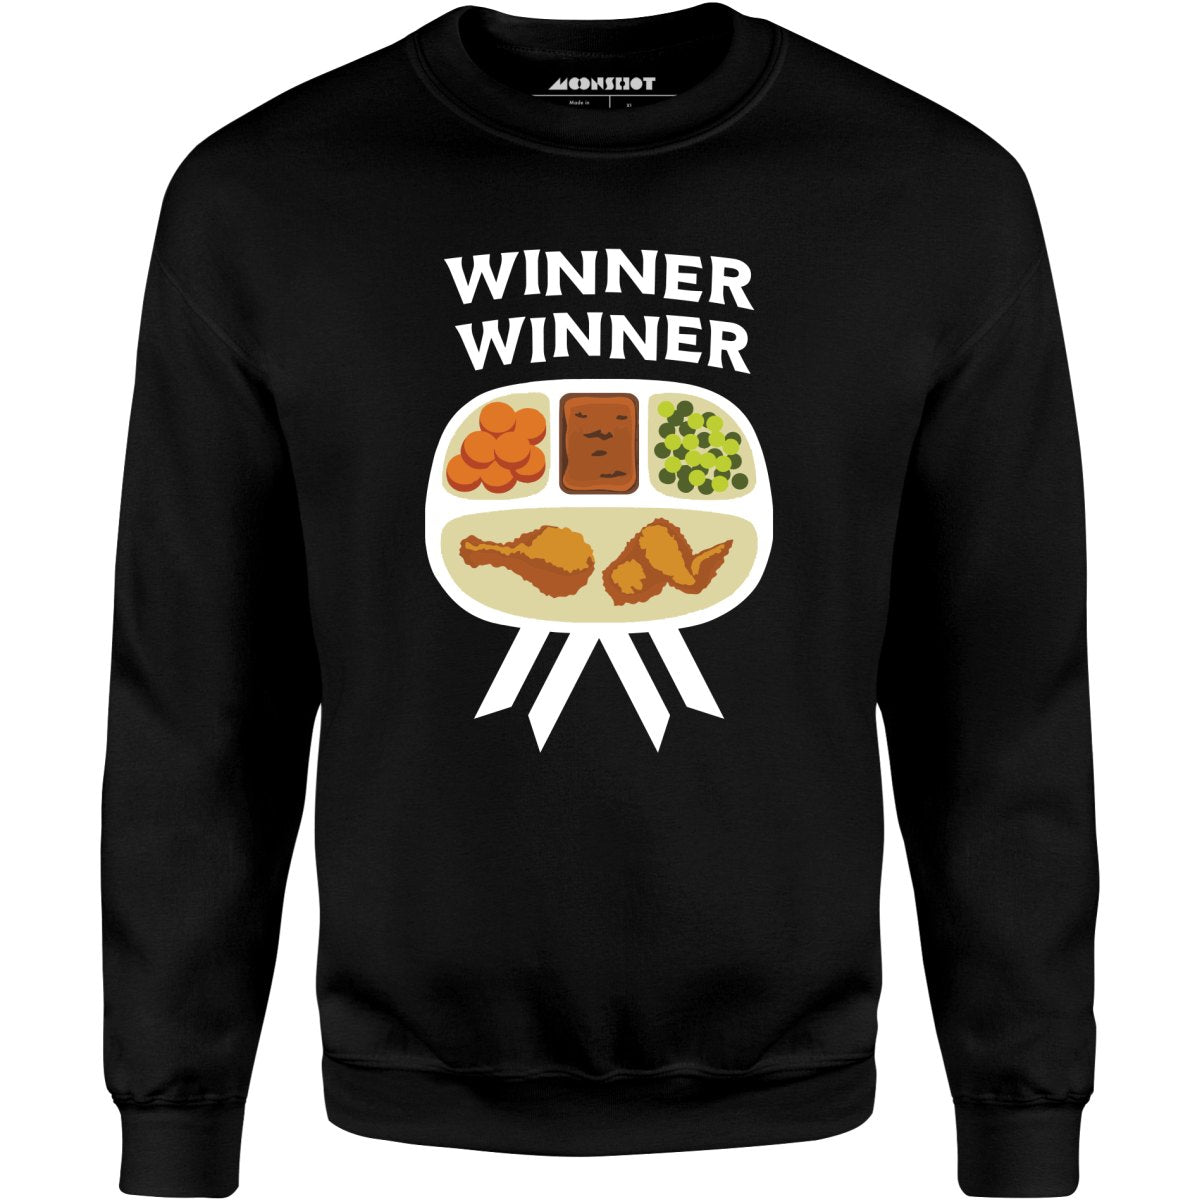 Winner Winner Chicken Dinner - Unisex Sweatshirt